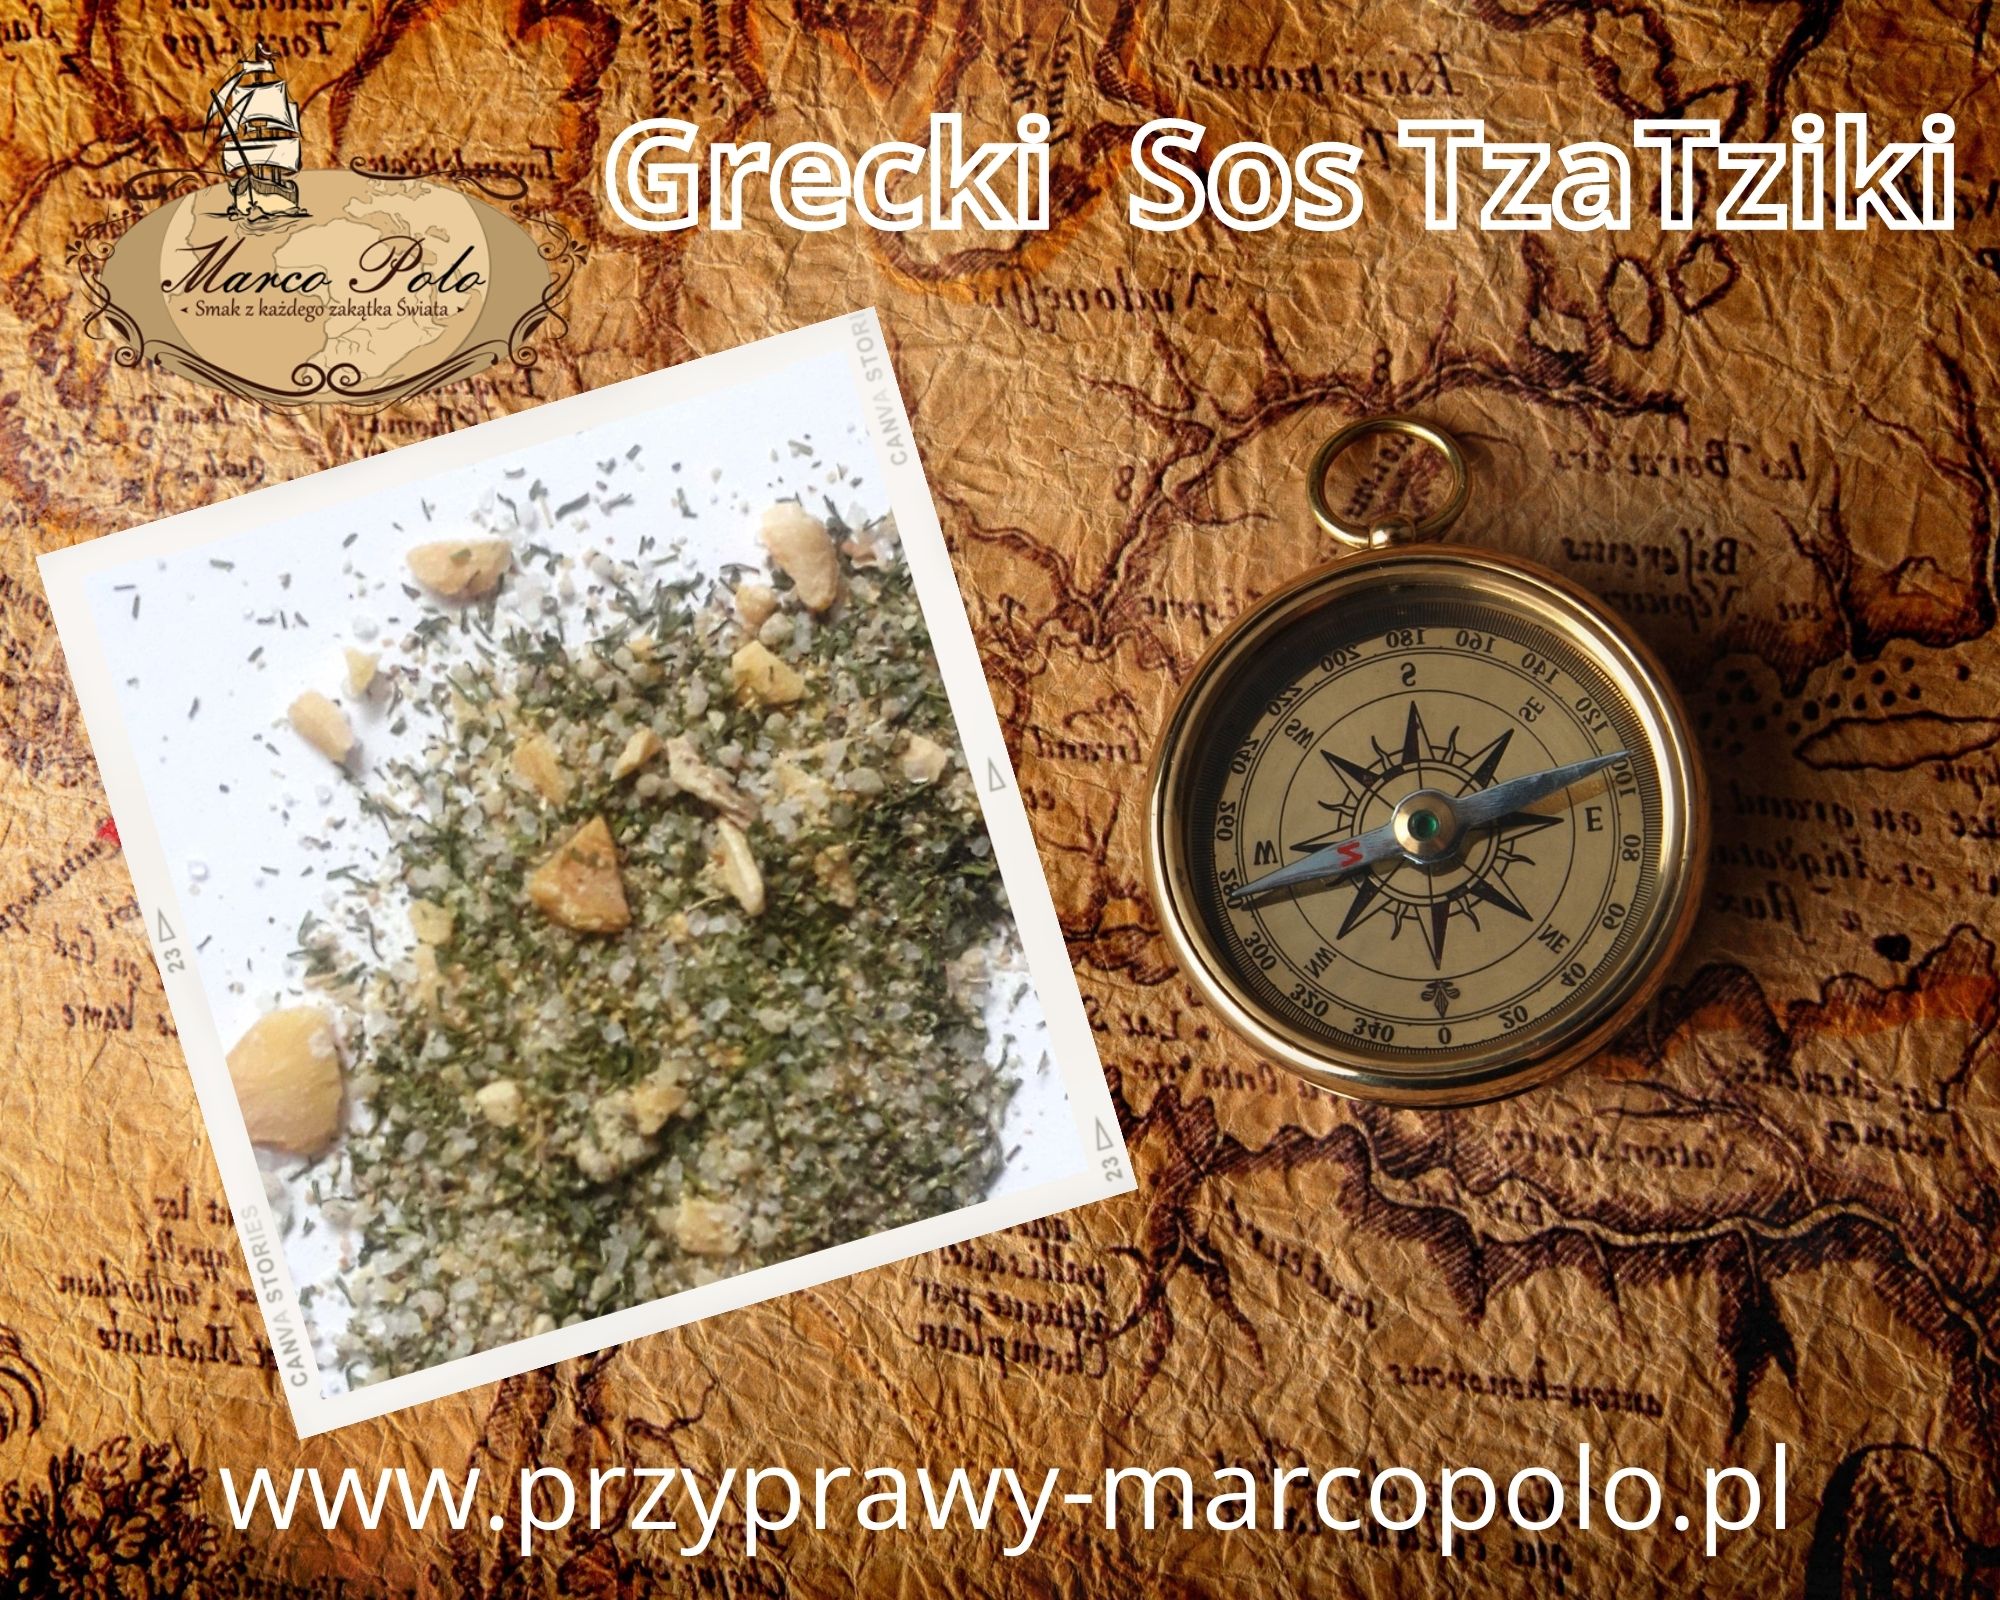 Przyprawa Tzatziki - grecki sos